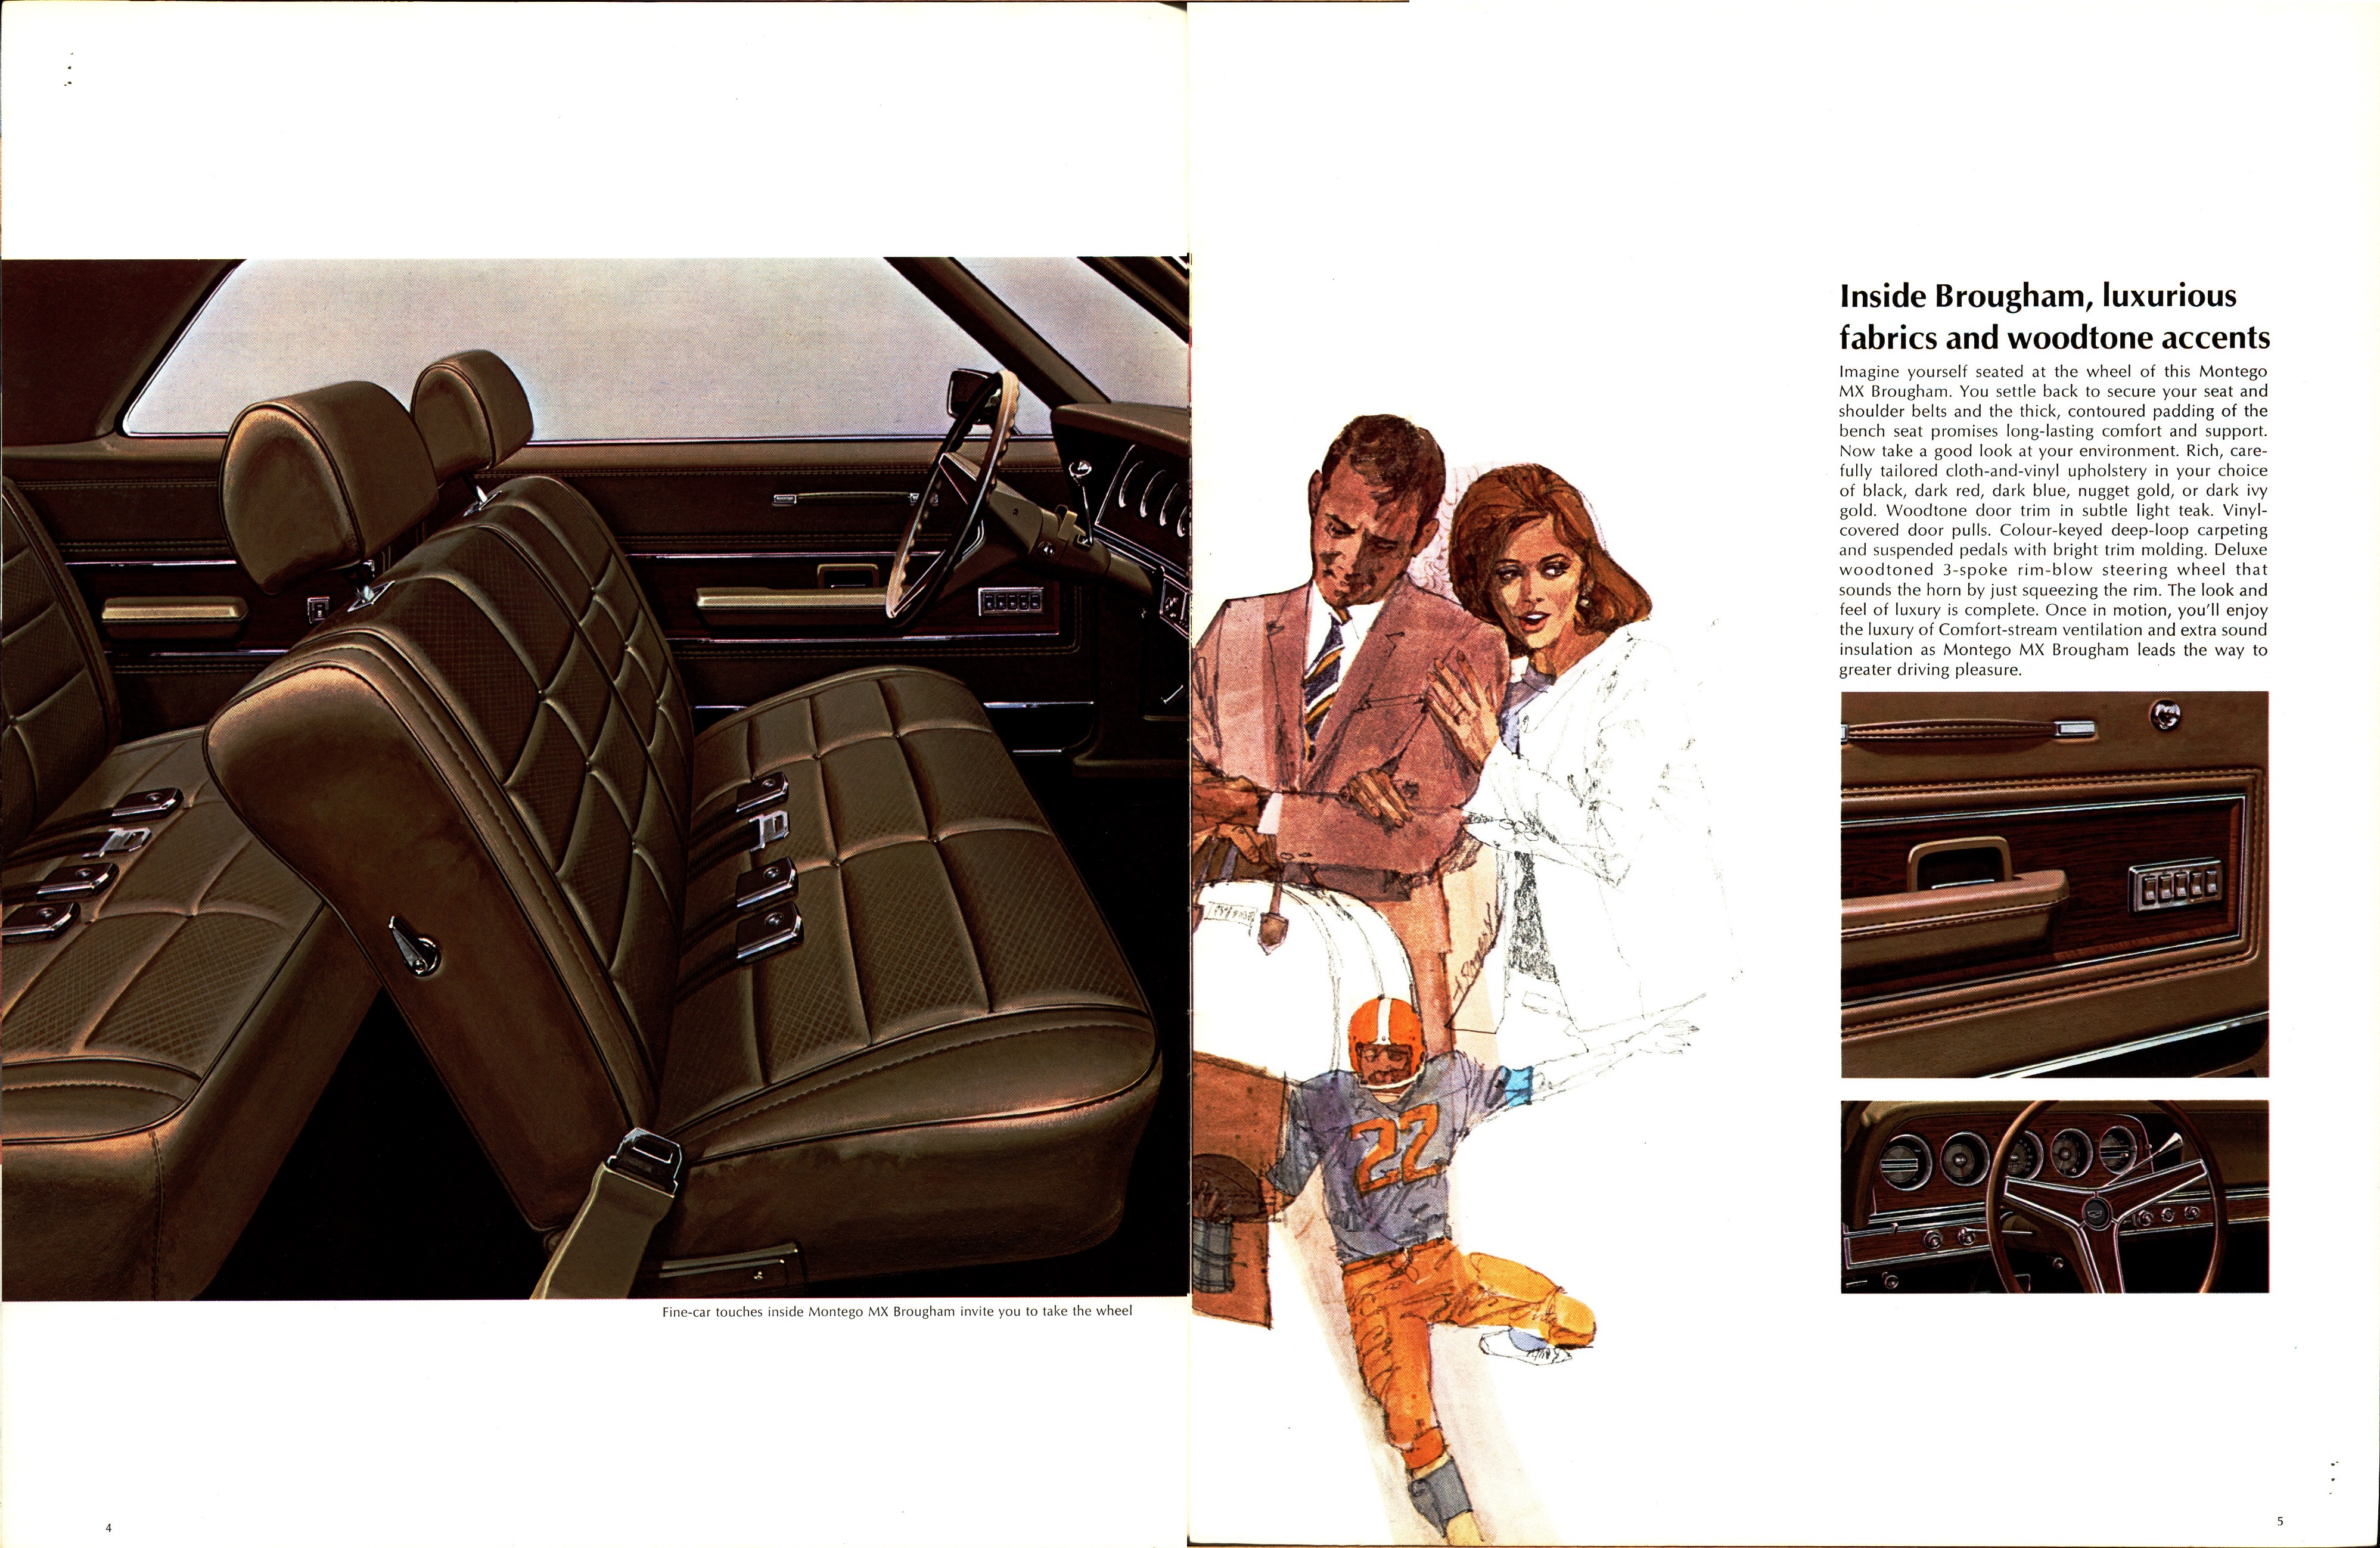 1969 Mercury Montego Brochure Canada 04-05